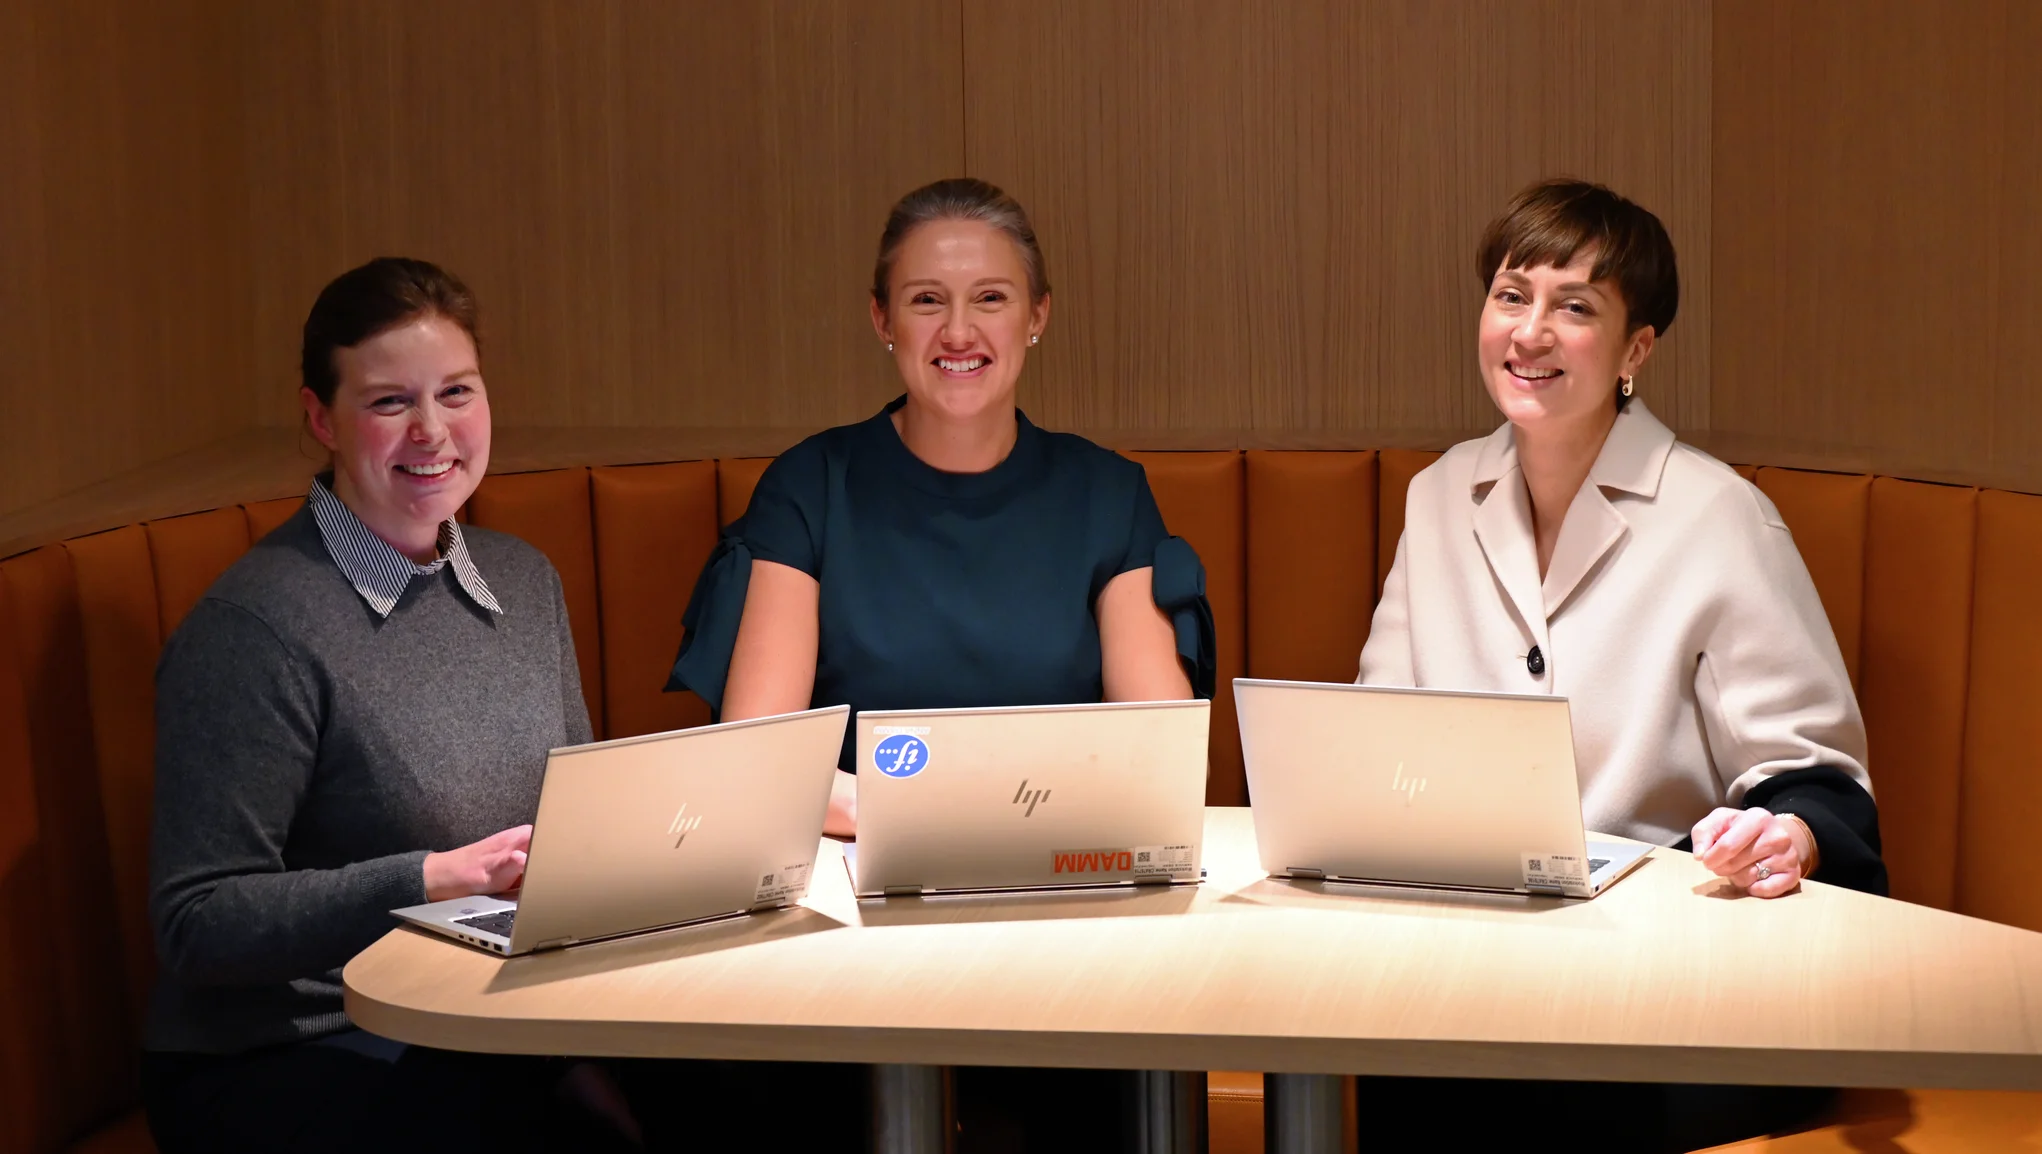 Kolme hymyilevää vastuullisuusviestijää vierekkäin pyöreän pöydän ääressä kannettavat tietokoneet edessään